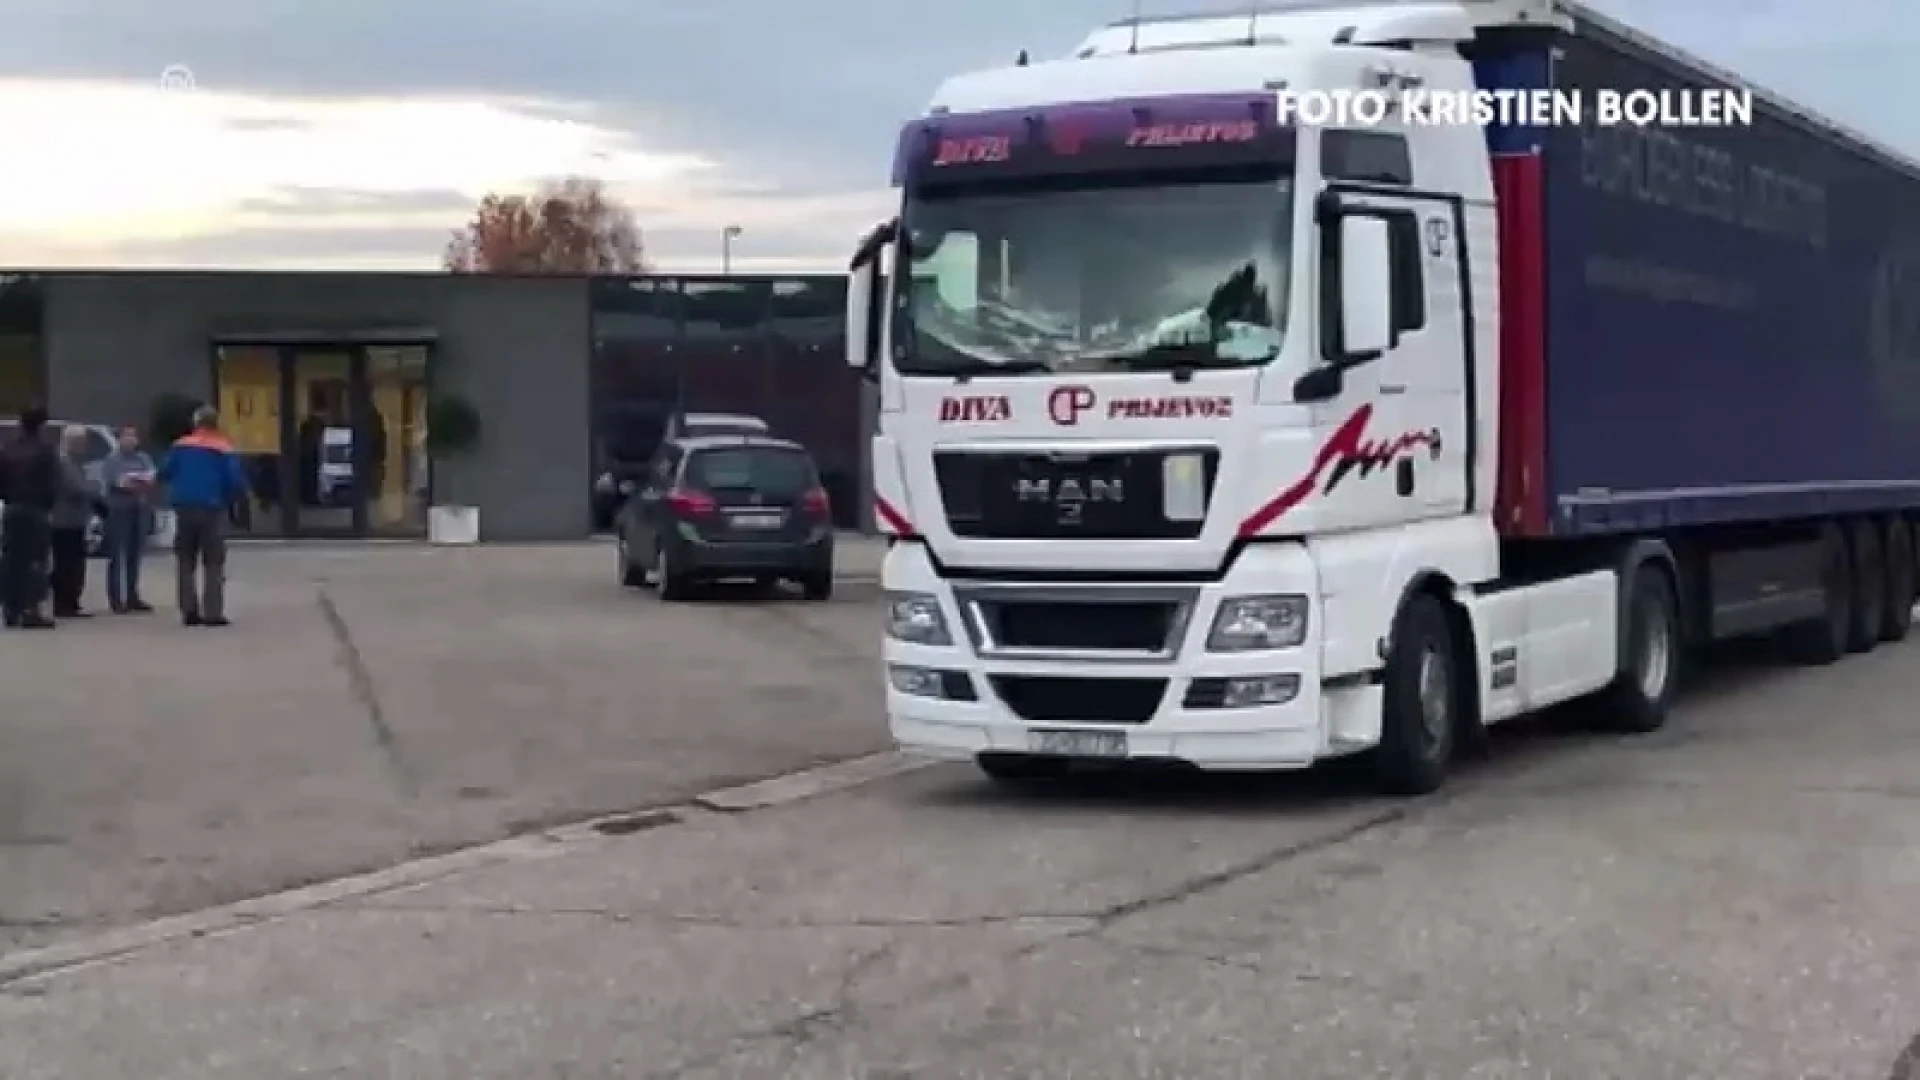 10 mensen vluchten uit vrachtwagen op bedrijventerrein in Hoegaarden, politie is nog altijd op zoek naar hen